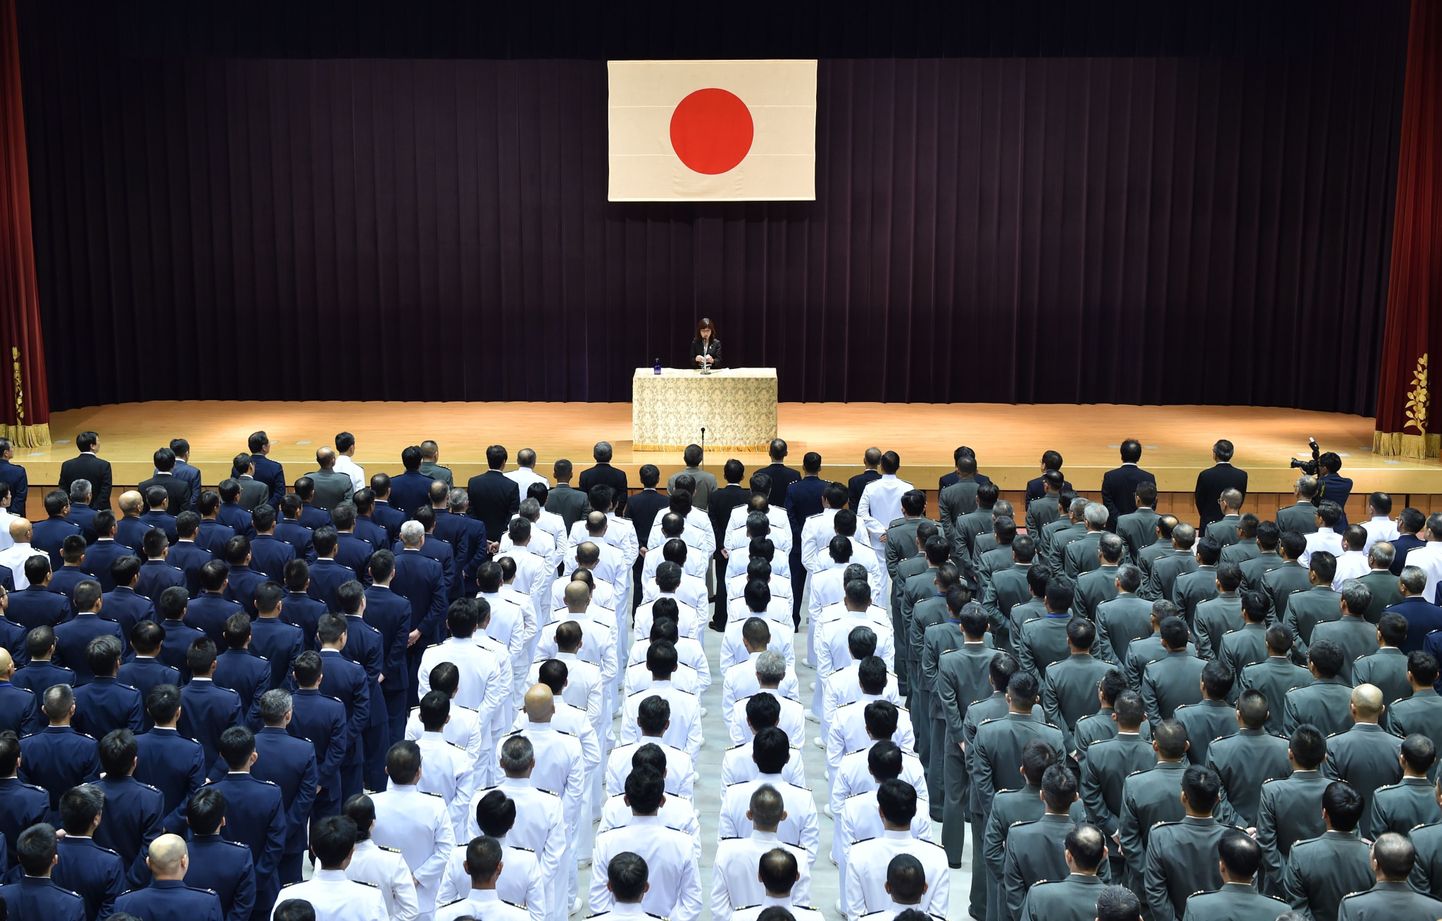 Jaapani uus kaitseminister Tomomi Inada kõnet pidamas.